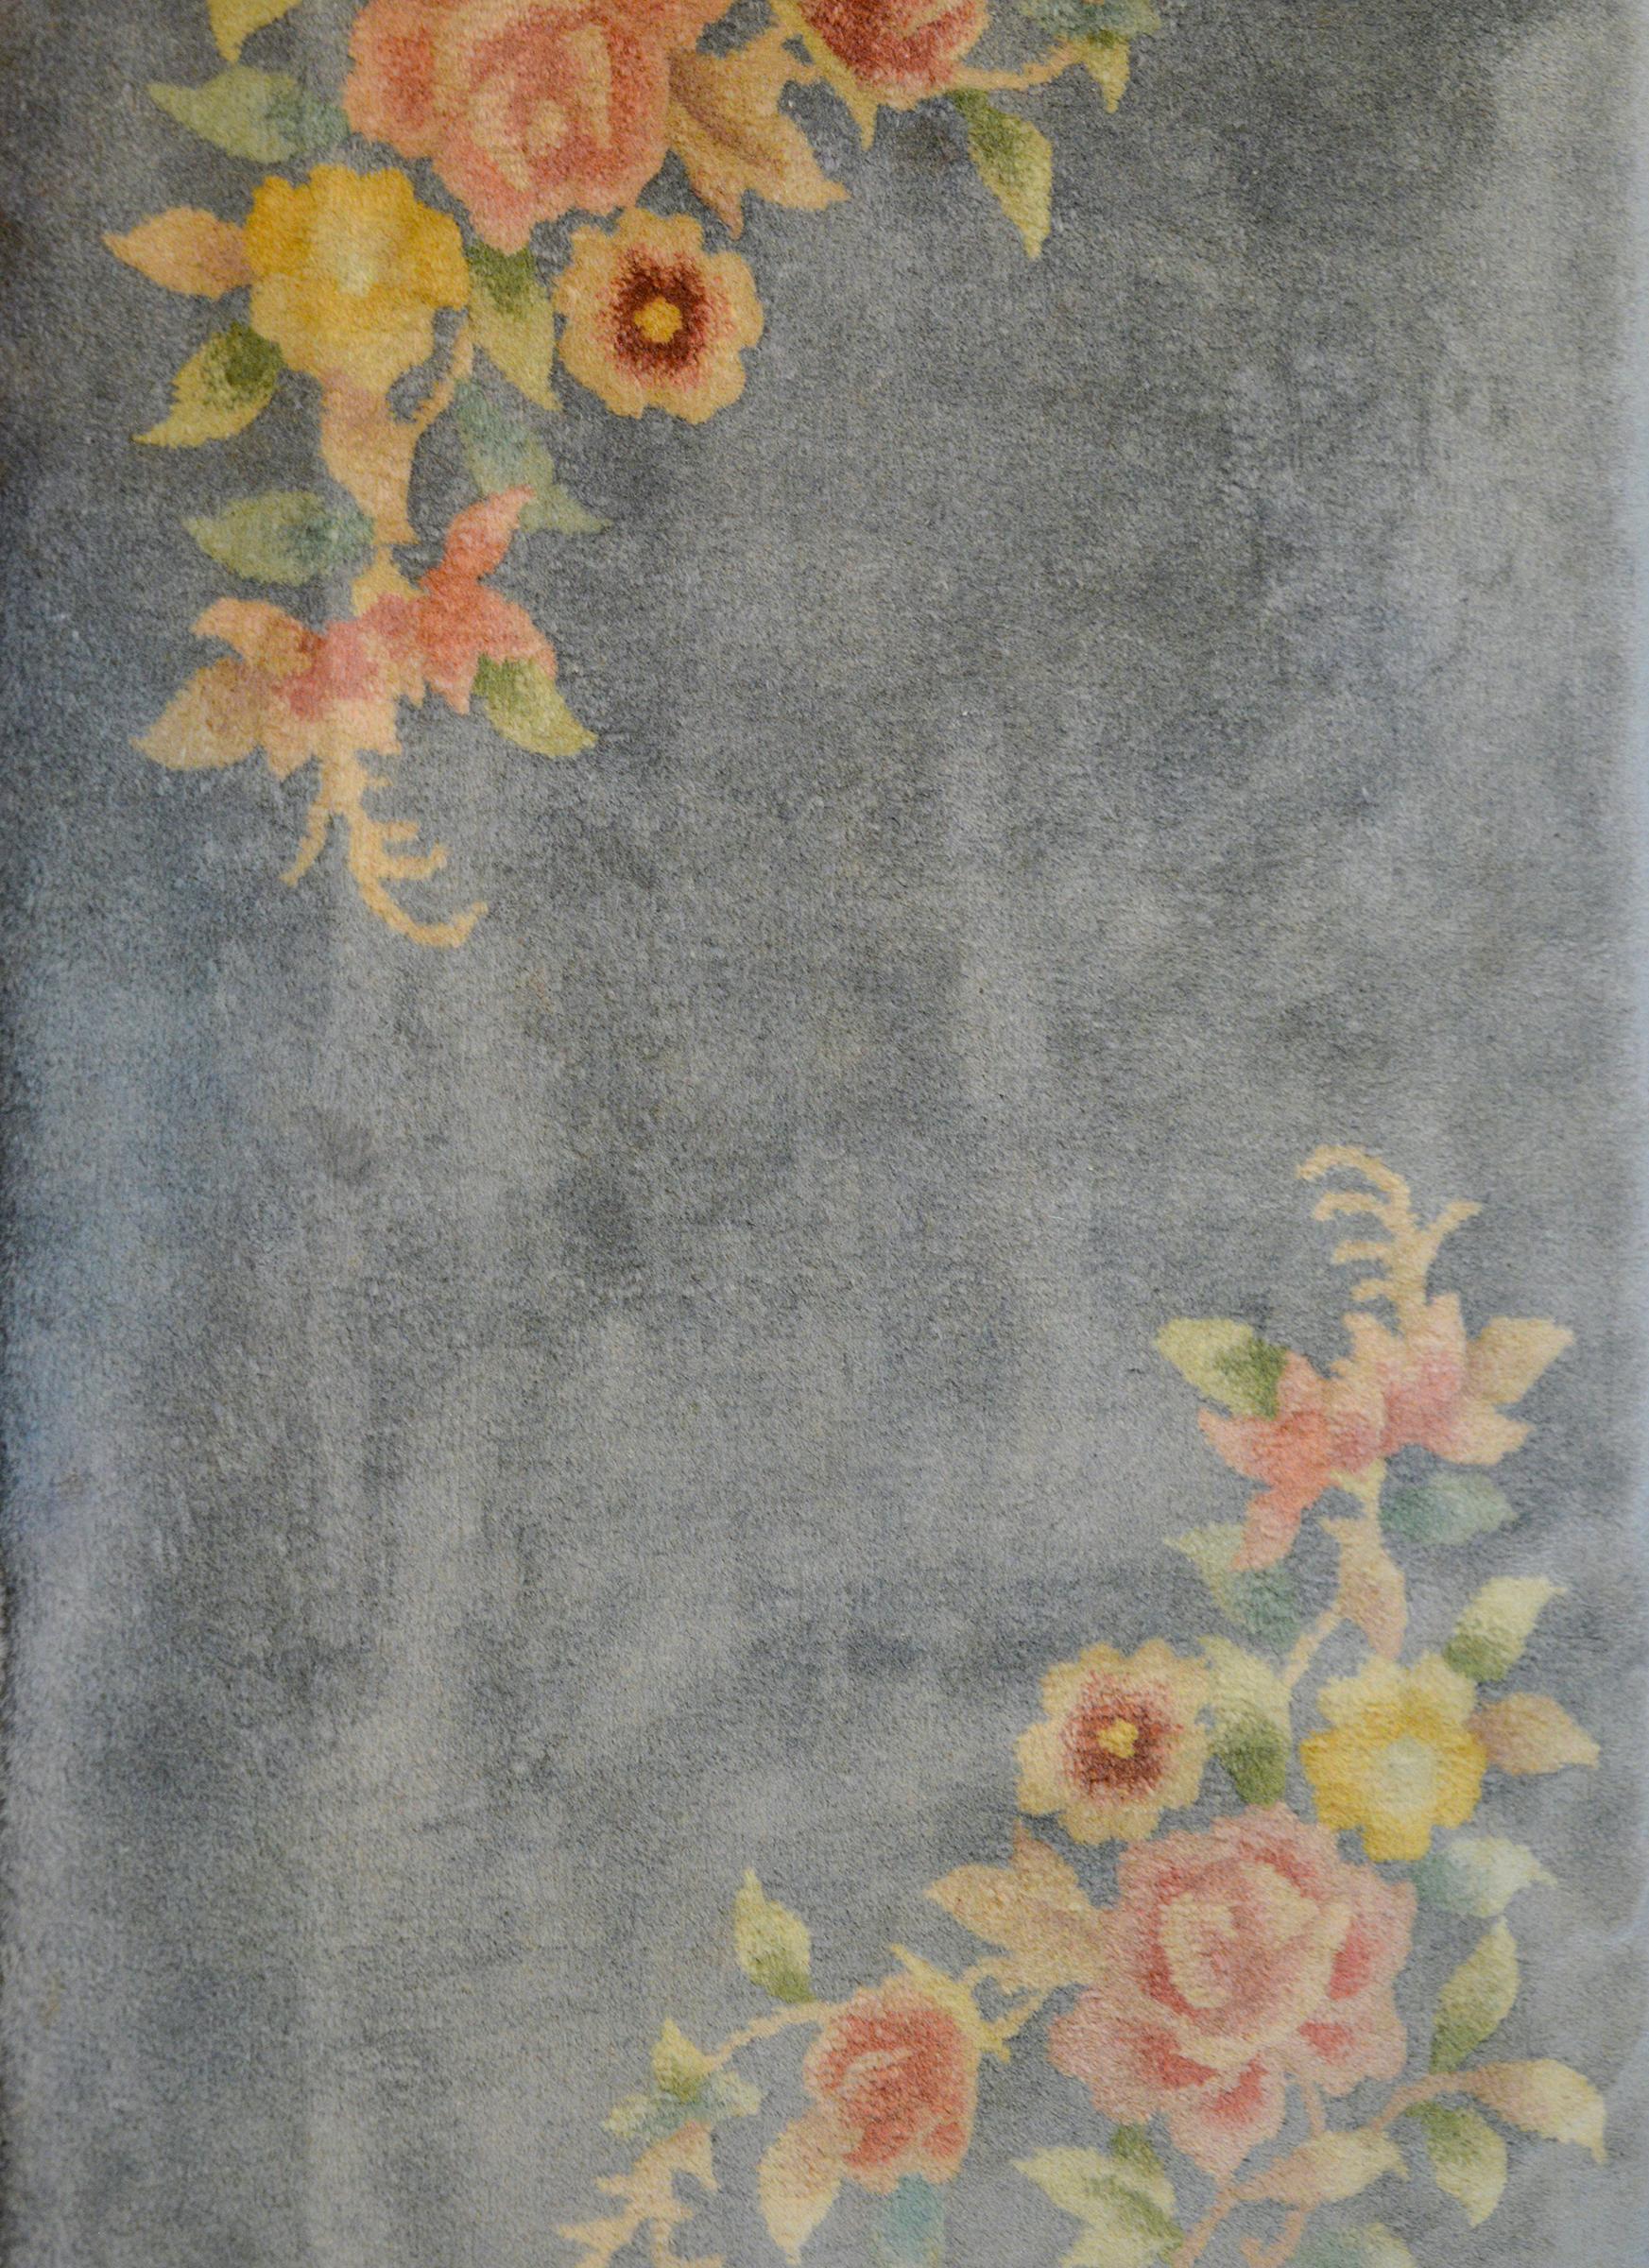 Un adorable petit tapis Art déco chinois du milieu du 20e siècle avec un fond gris et des grappes de pivoines tissées en rose pâle, jaune, vert et bleu vivant dans les coins opposés.